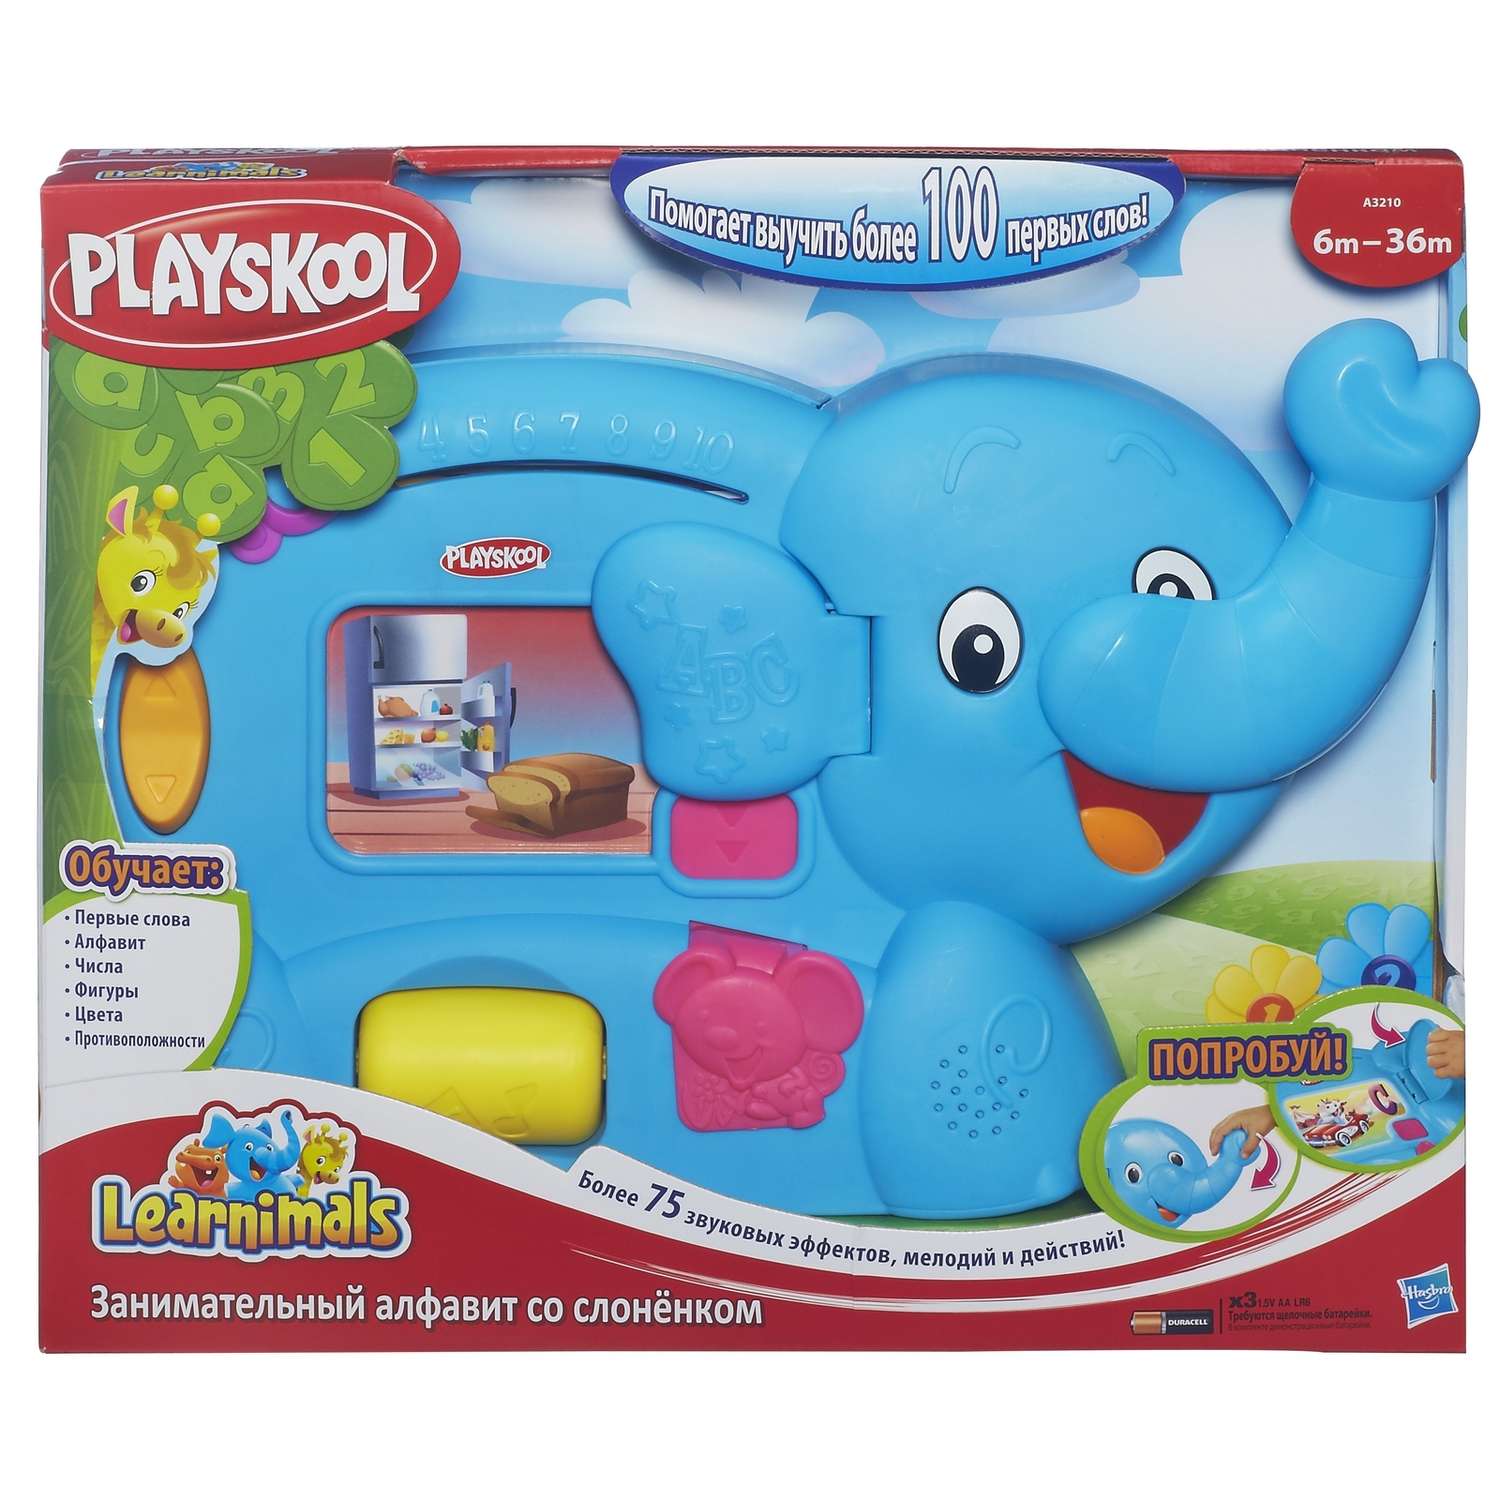 Обучающая игрушка Playskool Слоник - фото 2